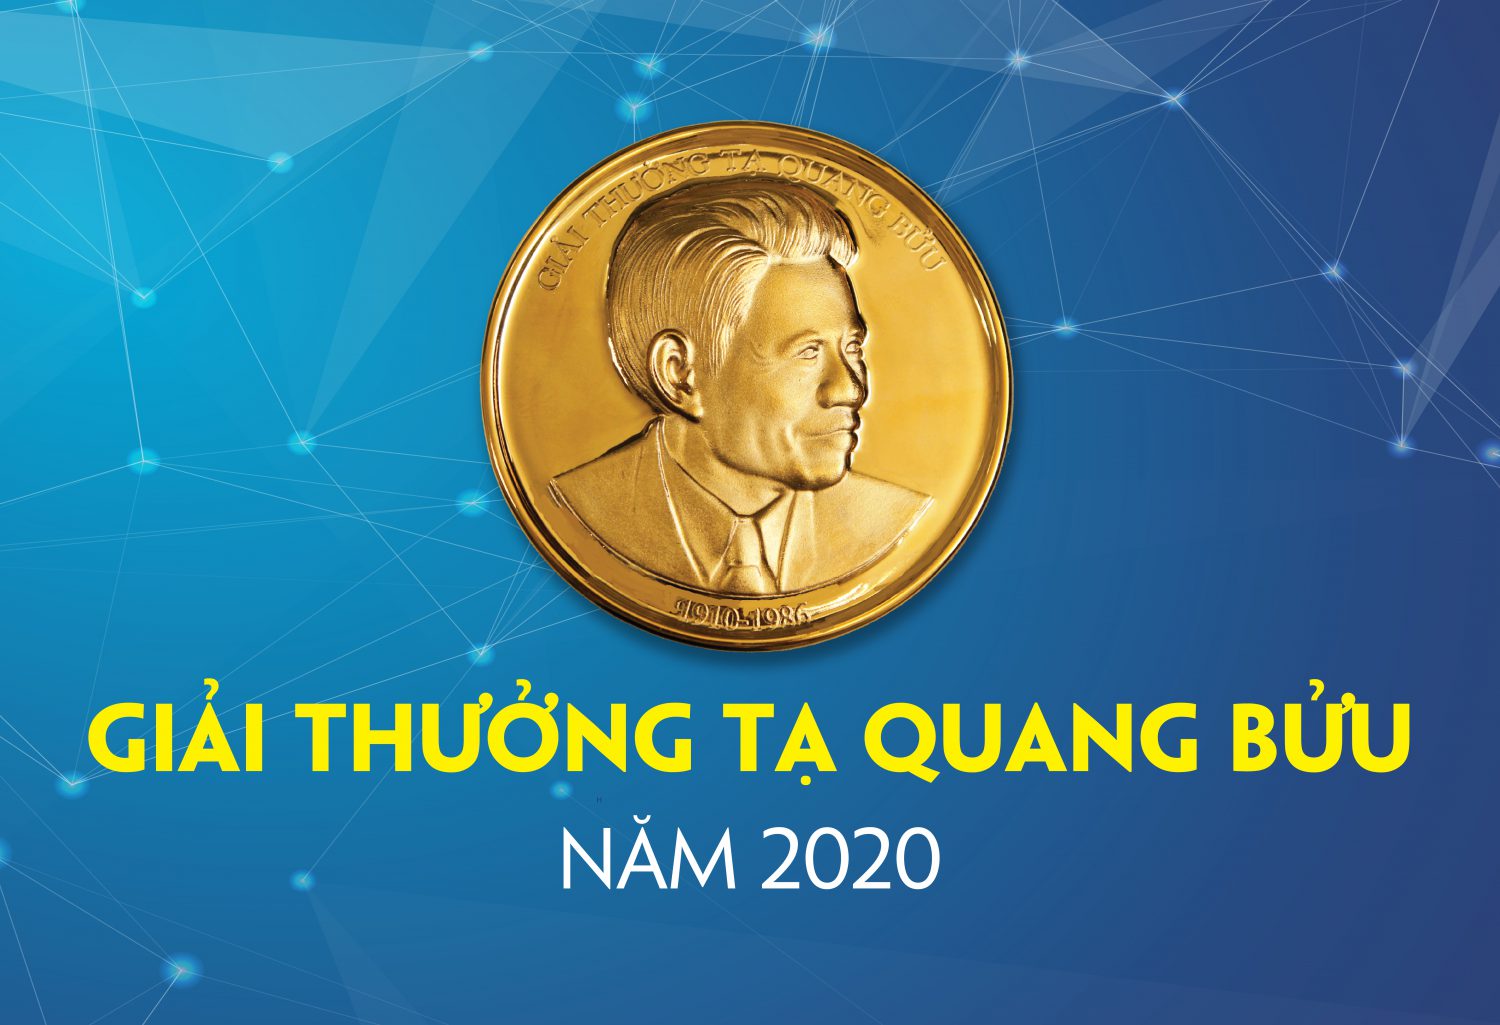 8 nhà khoa học được đề cử Giải thưởng Tạ Quang Bửu năm 2020